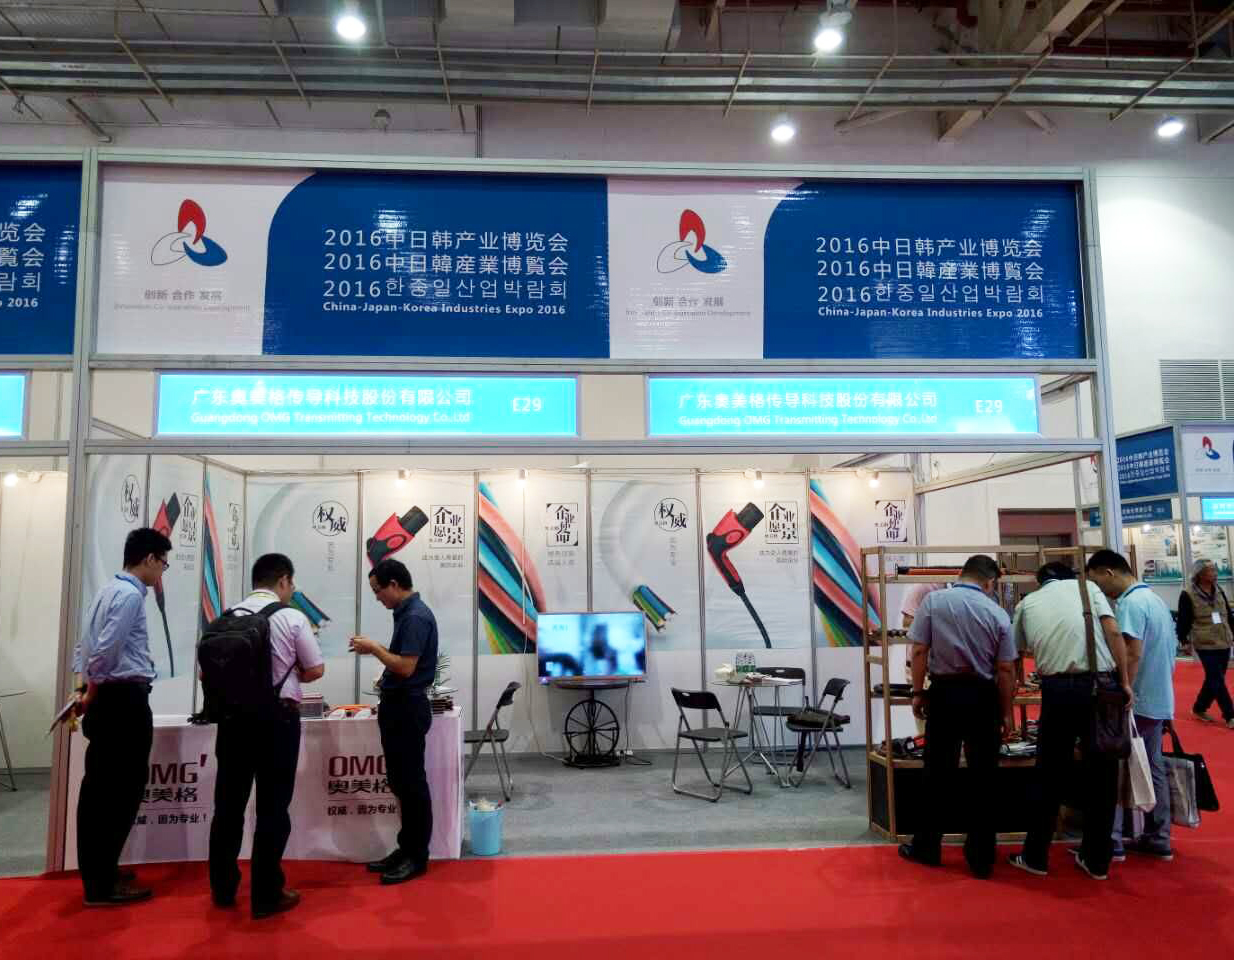 奥美格参加山东潍坊2016中日韩产业博览会